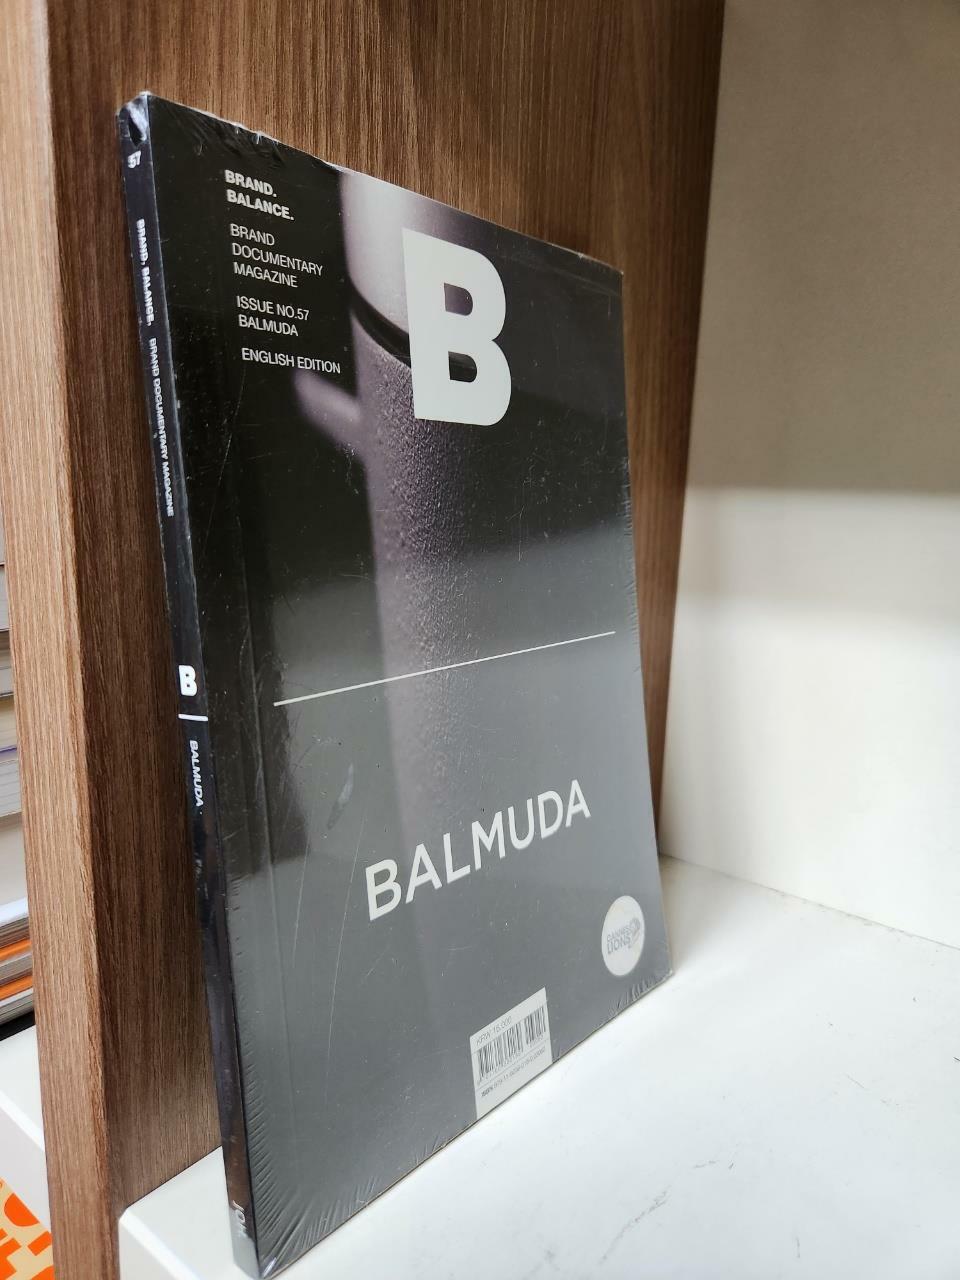 [중고] 매거진 B (Magazine B) Vol.57 : 발뮤다 (BALMUDA)